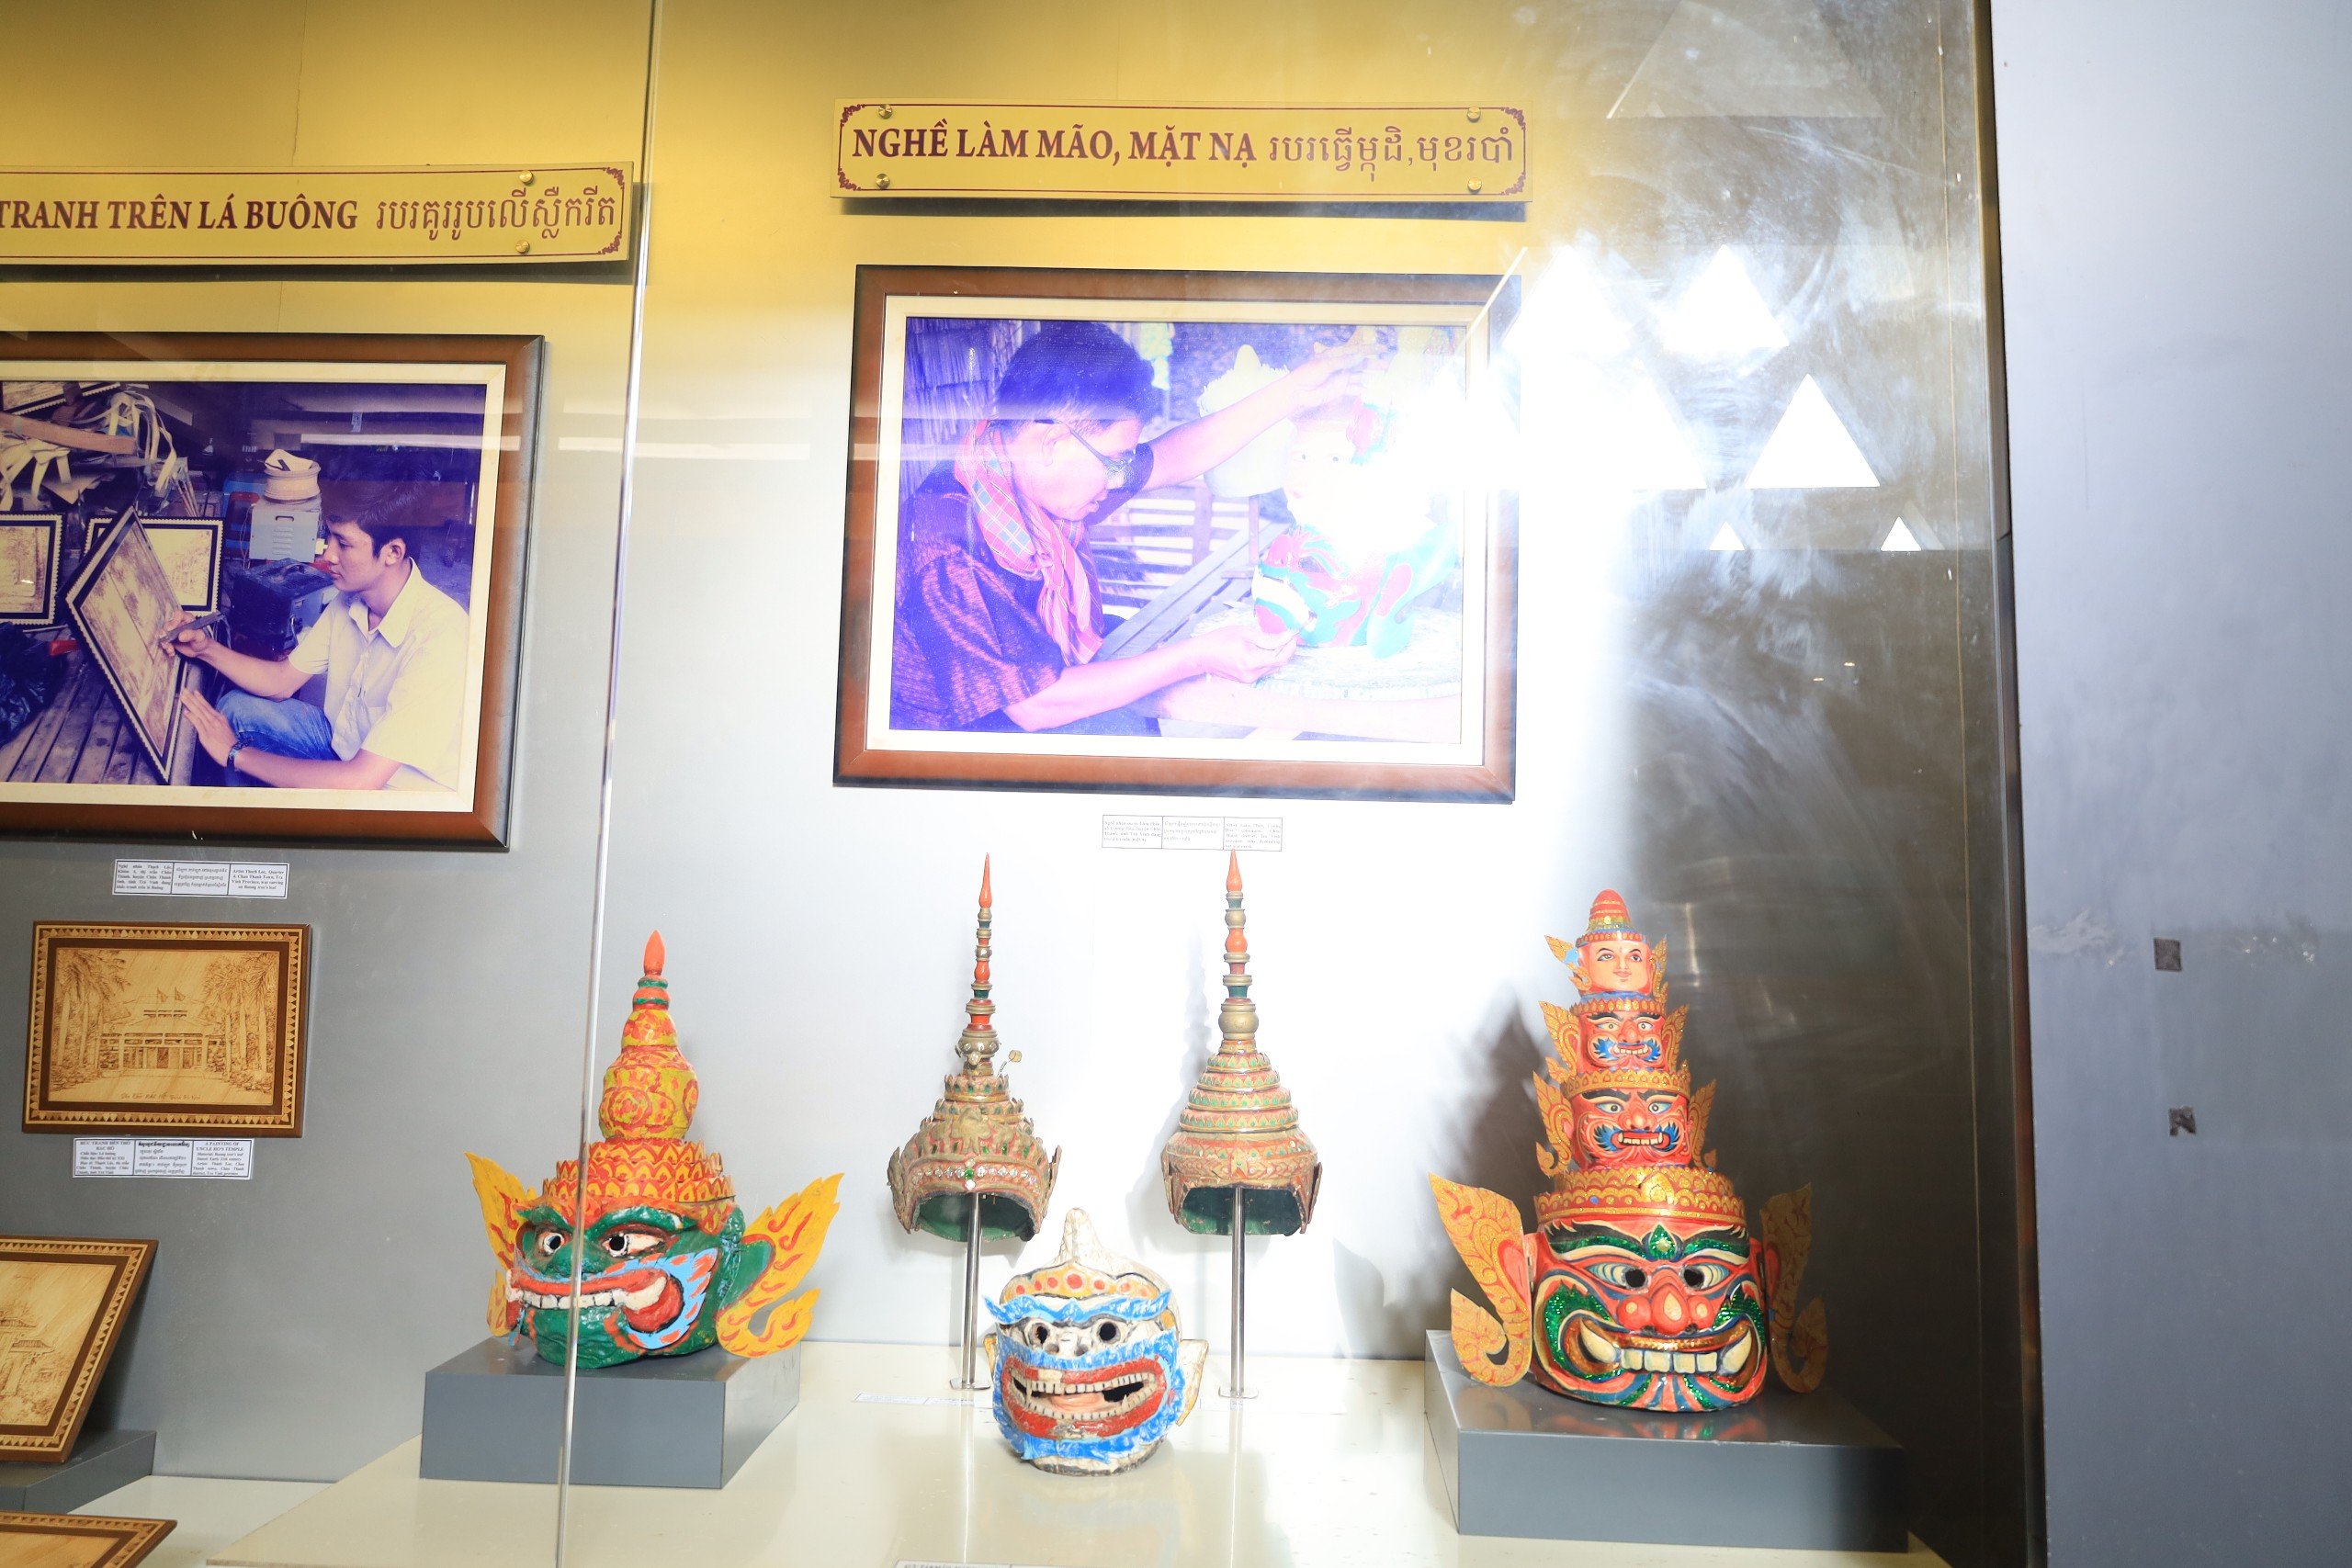 Nơi đây hiện có hơn 13.000 hiện vật các loại phản ánh đời sống văn hóa vật chất, văn hóa tinh thần của cộng đồng dân tộc Khmer Trà Vinh, từ truyền thống đến đương đại.